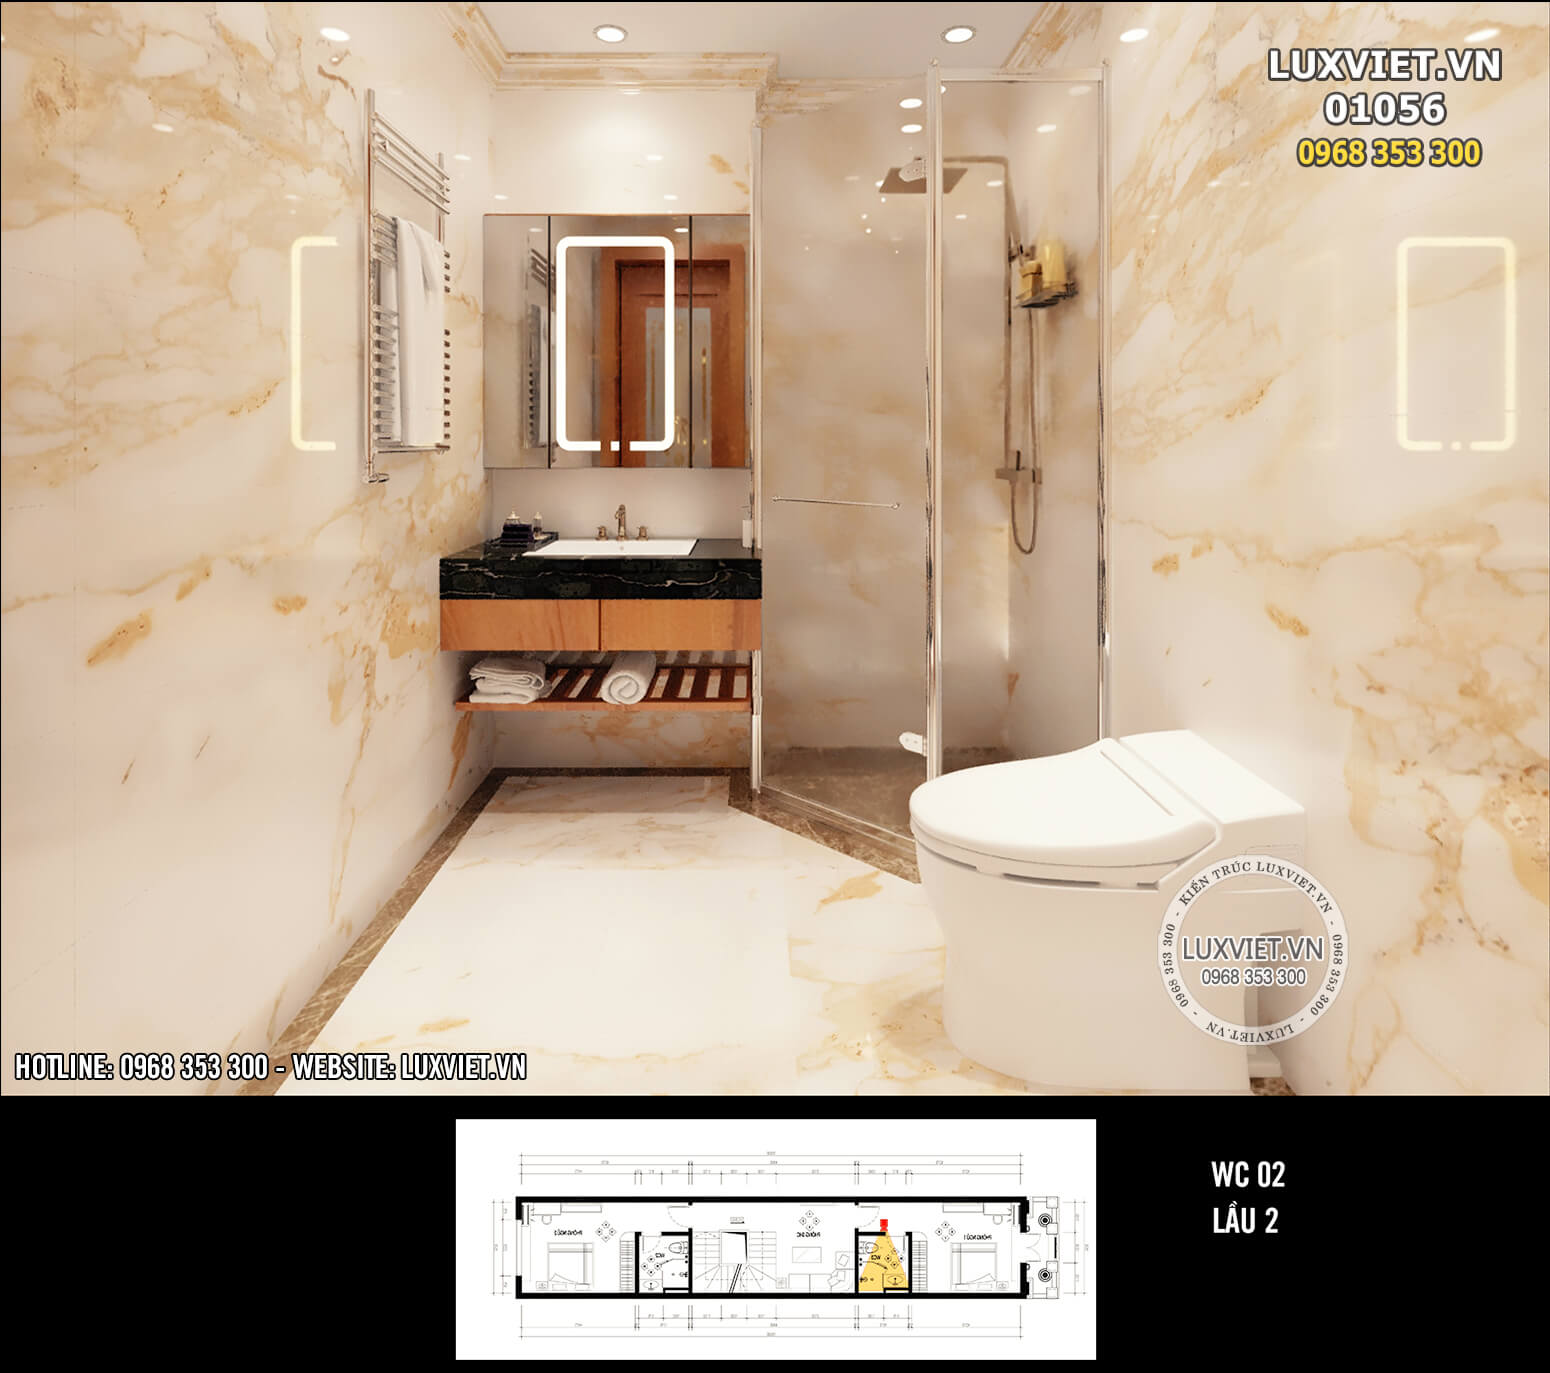 Hình ảnh: Thiết kế phòng tắm tiện nghi và đẳng cấp - LV 01056